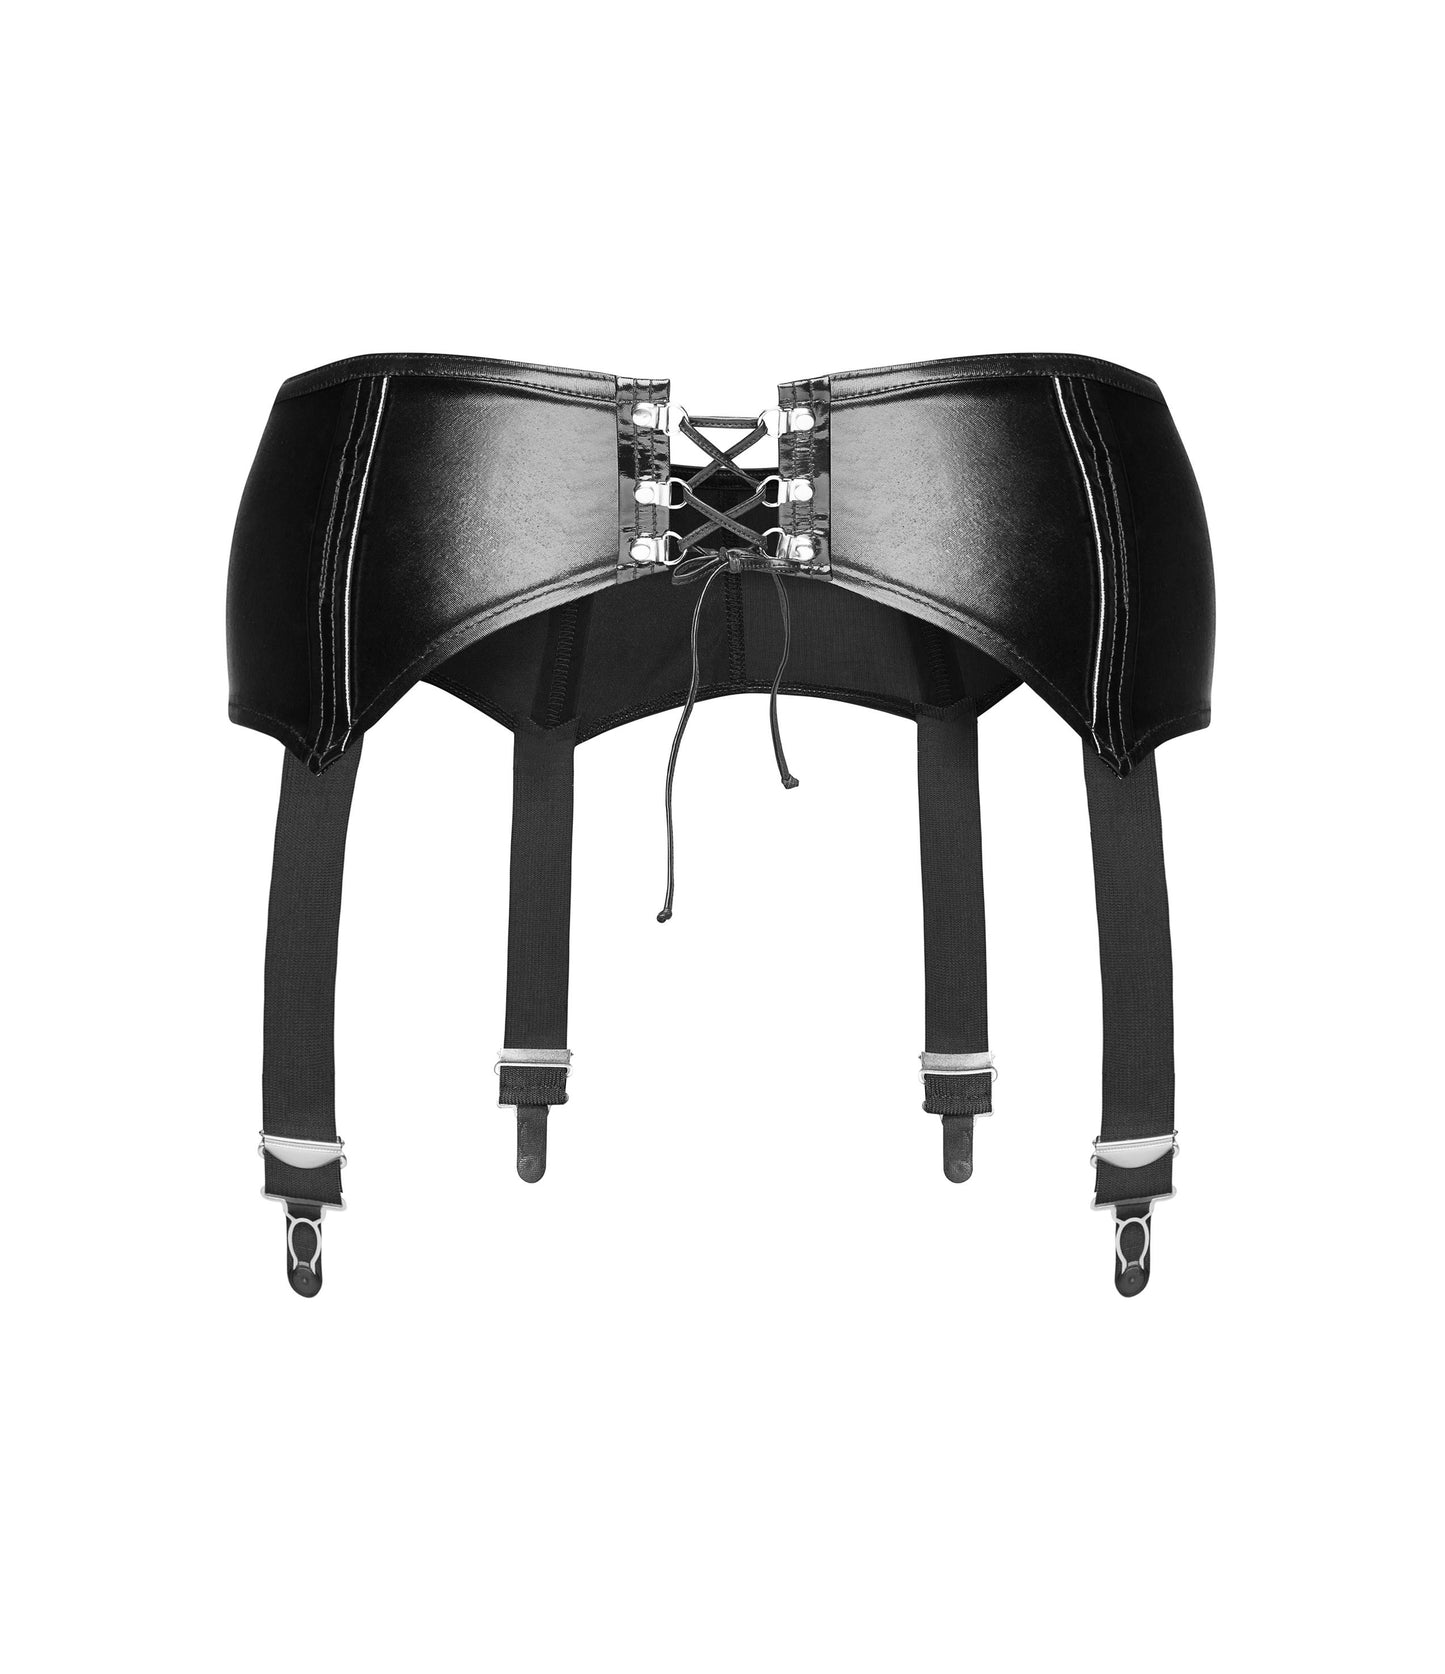 Noir Handmade, Essentials hofteholder - Eksklusiv stil med Noir Handmade's hofteholdere. Wetlook fremviser dine kurver, kombinerer kraft og sensualitet.